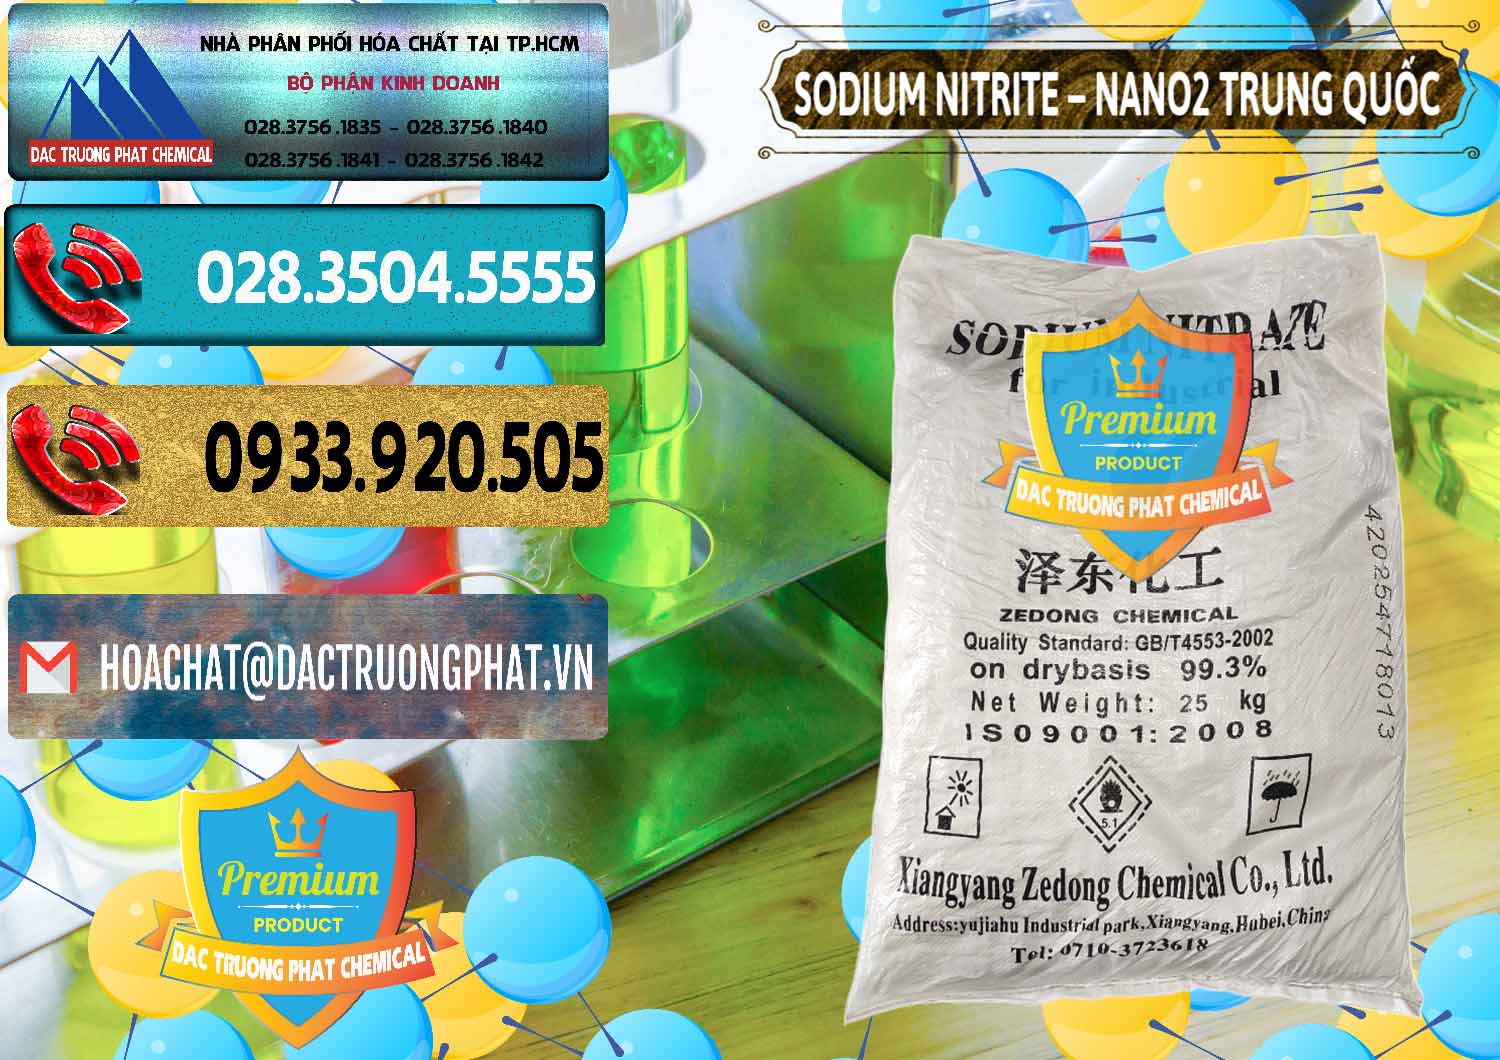 Cty bán và cung cấp Sodium Nitrite - NANO2 Zedong Trung Quốc China - 0149 - Đơn vị chuyên phân phối & cung ứng hóa chất tại TP.HCM - hoachatdetnhuom.com